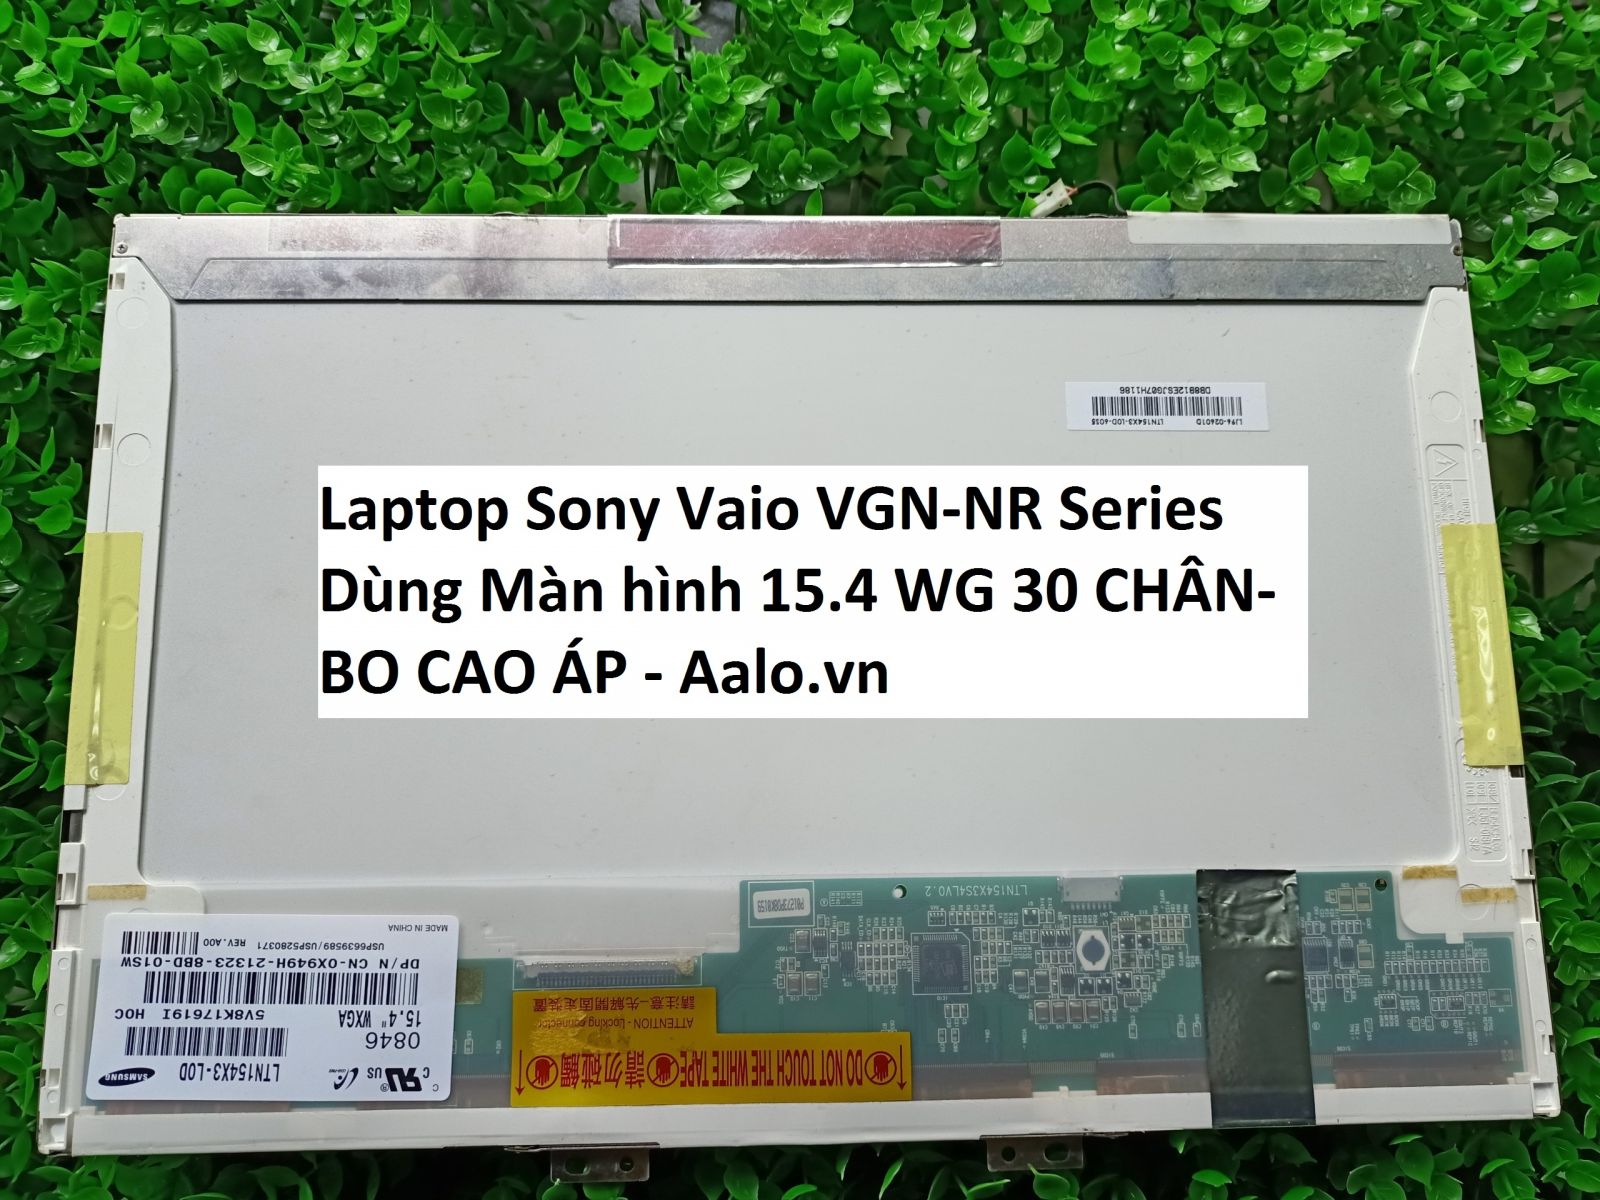 Màn hình Laptop Sony Vaio VGN-NR Series - Aalo.vn